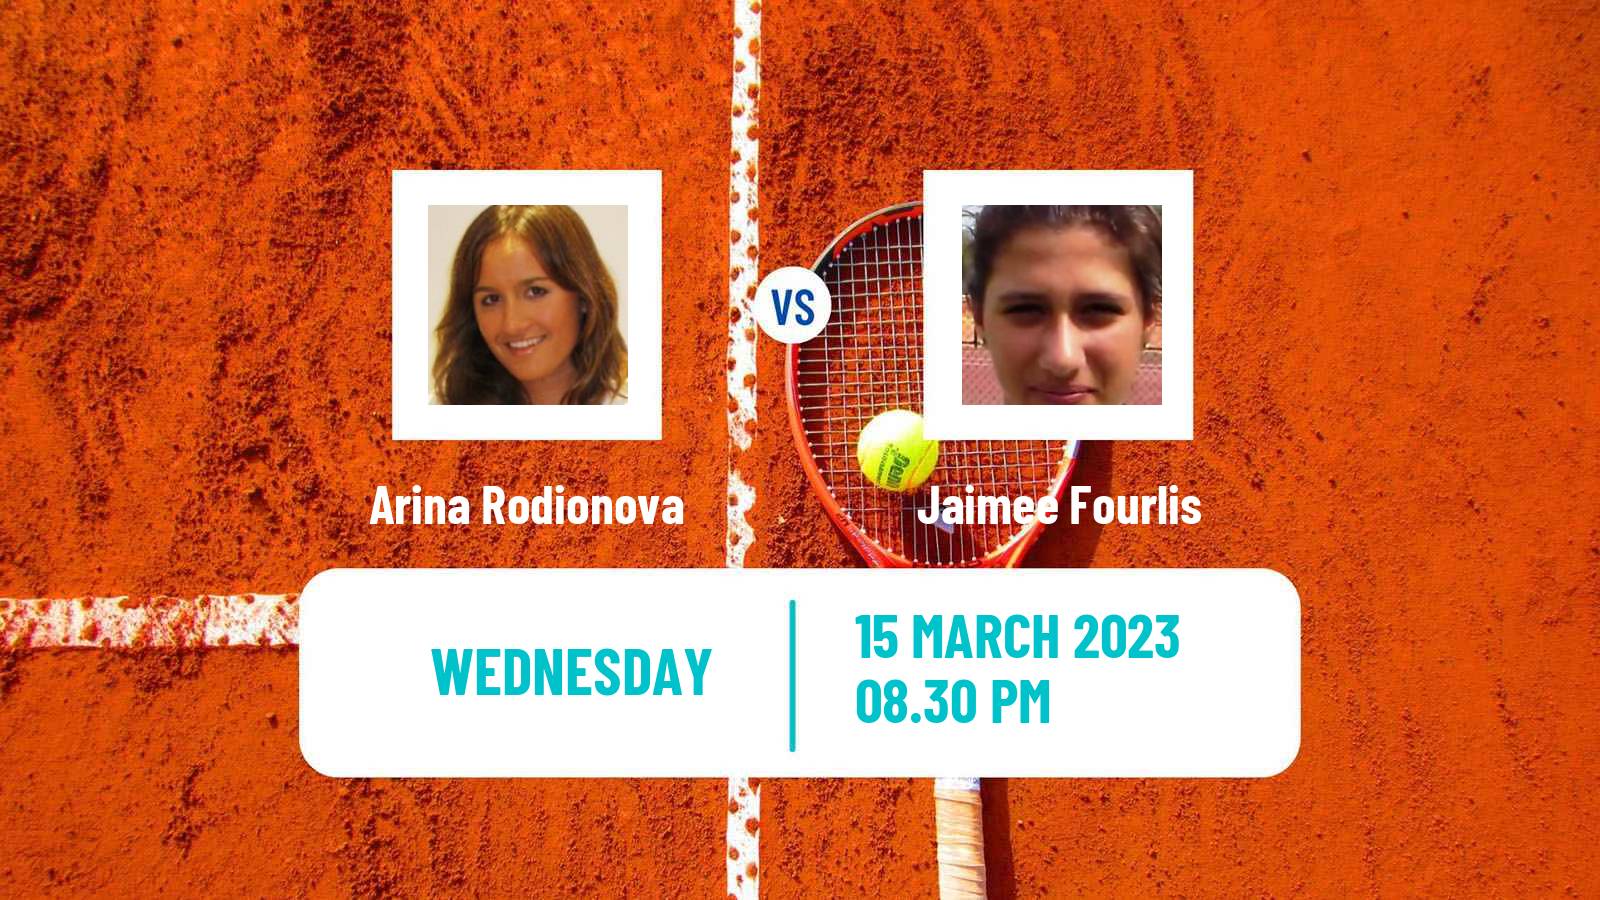 Tennis ITF Tournaments Arina Rodionova - Jaimee Fourlis